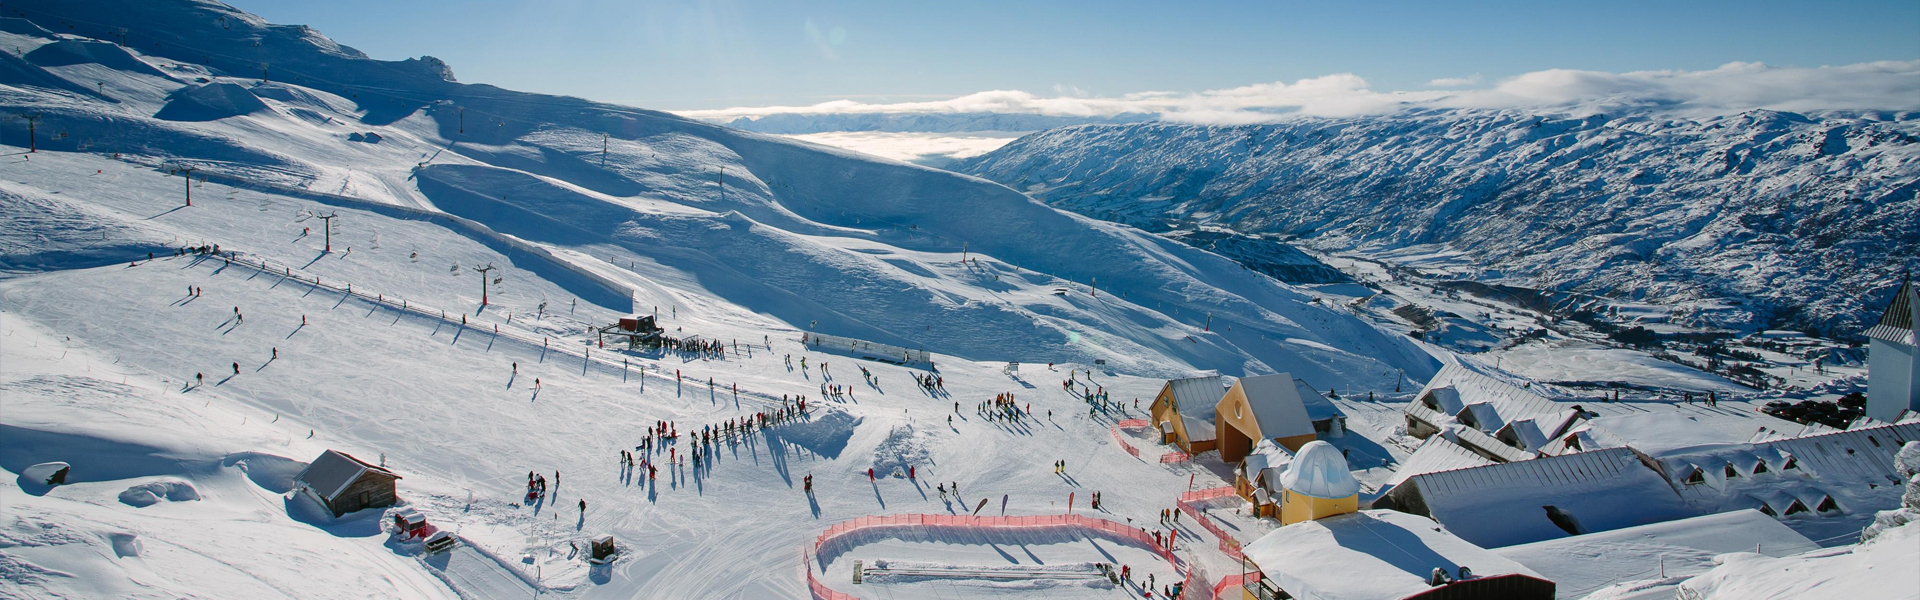 新西兰滑雪攻略2018